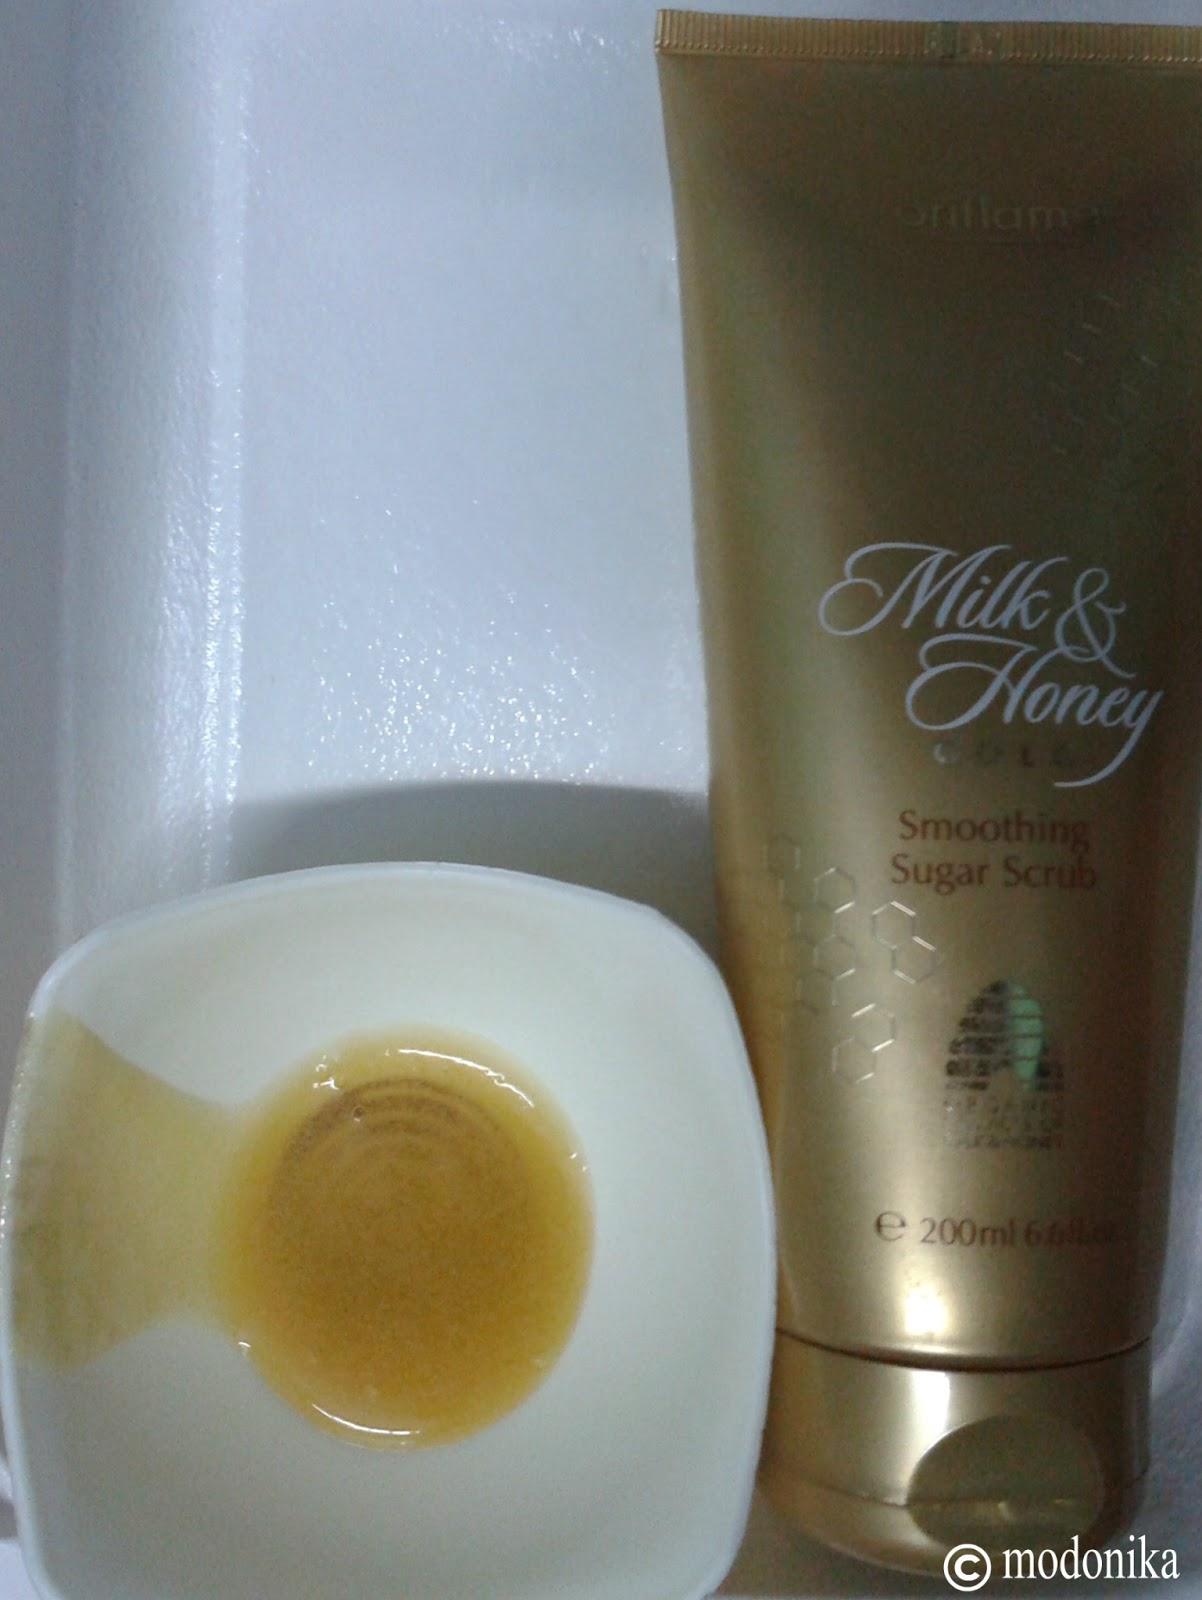 Oriflame Milk & Honey Gold Smoothing Sugar Scrub Review